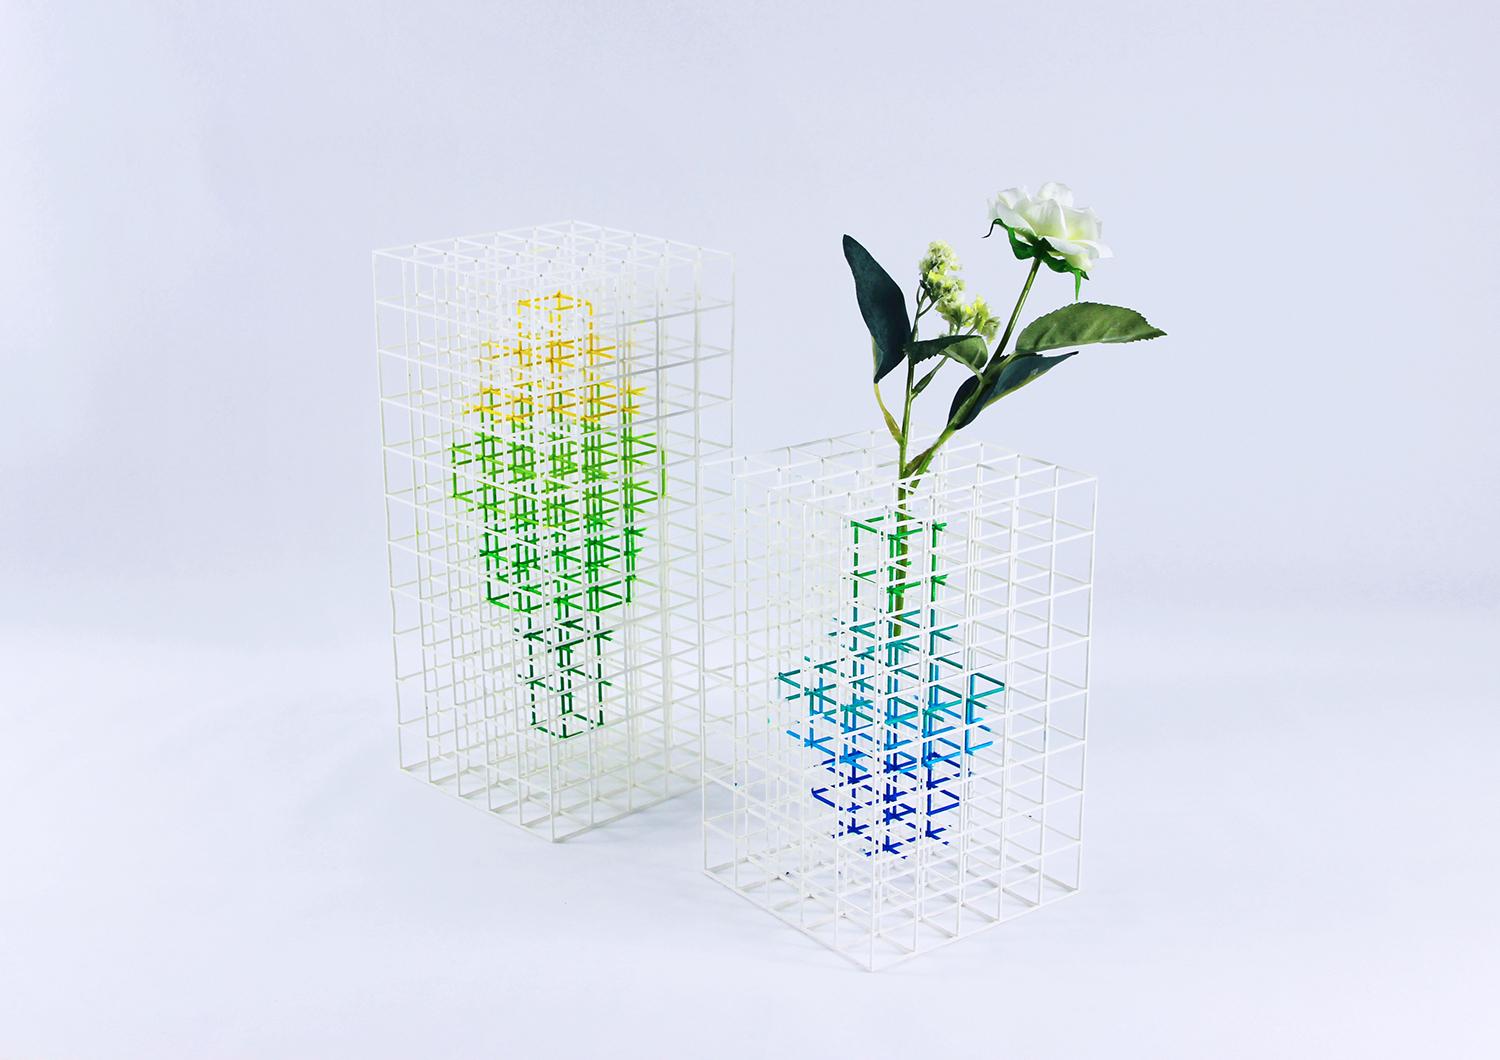 Vasen werden als Gefäße mit Rand definiert, aber nicht als solche. Vase NA 2.0 wurde von Desz entwickelt, um die Beziehung zwischen Mensch und Raum zu erforschen. Es ist ein Konzept über Linien, Farben und die IDEE, scheinbar etwas aus dem Nichts zu